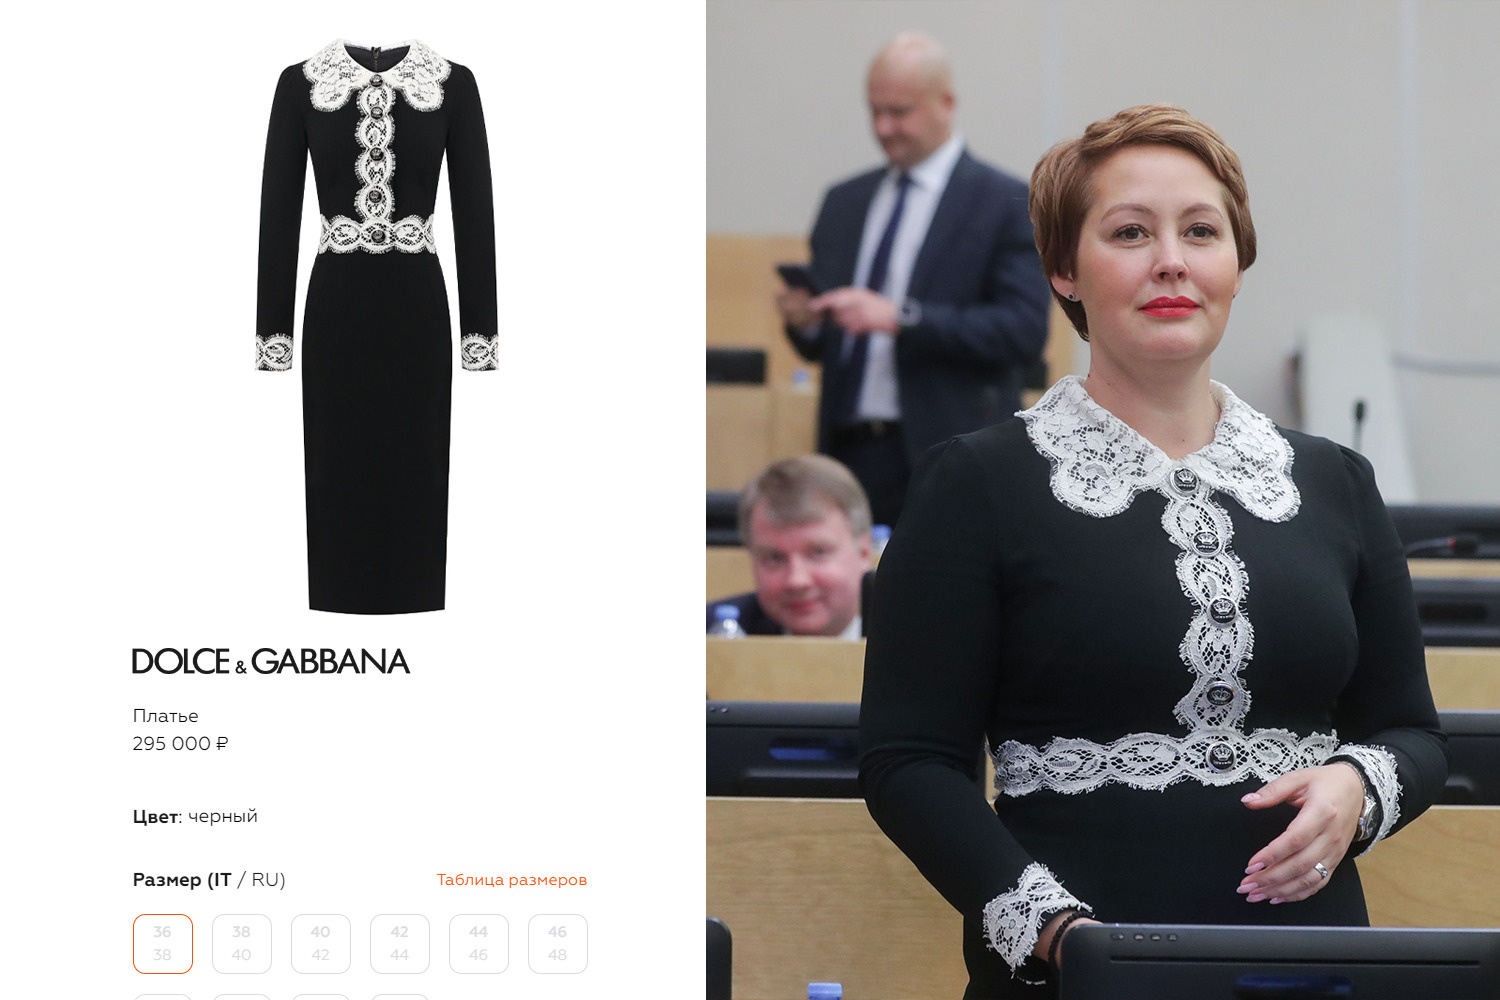 Член комитета по малому и среднему предпринимательству пришла на первое заседание Госдумы в платье Dolce & Gabbana